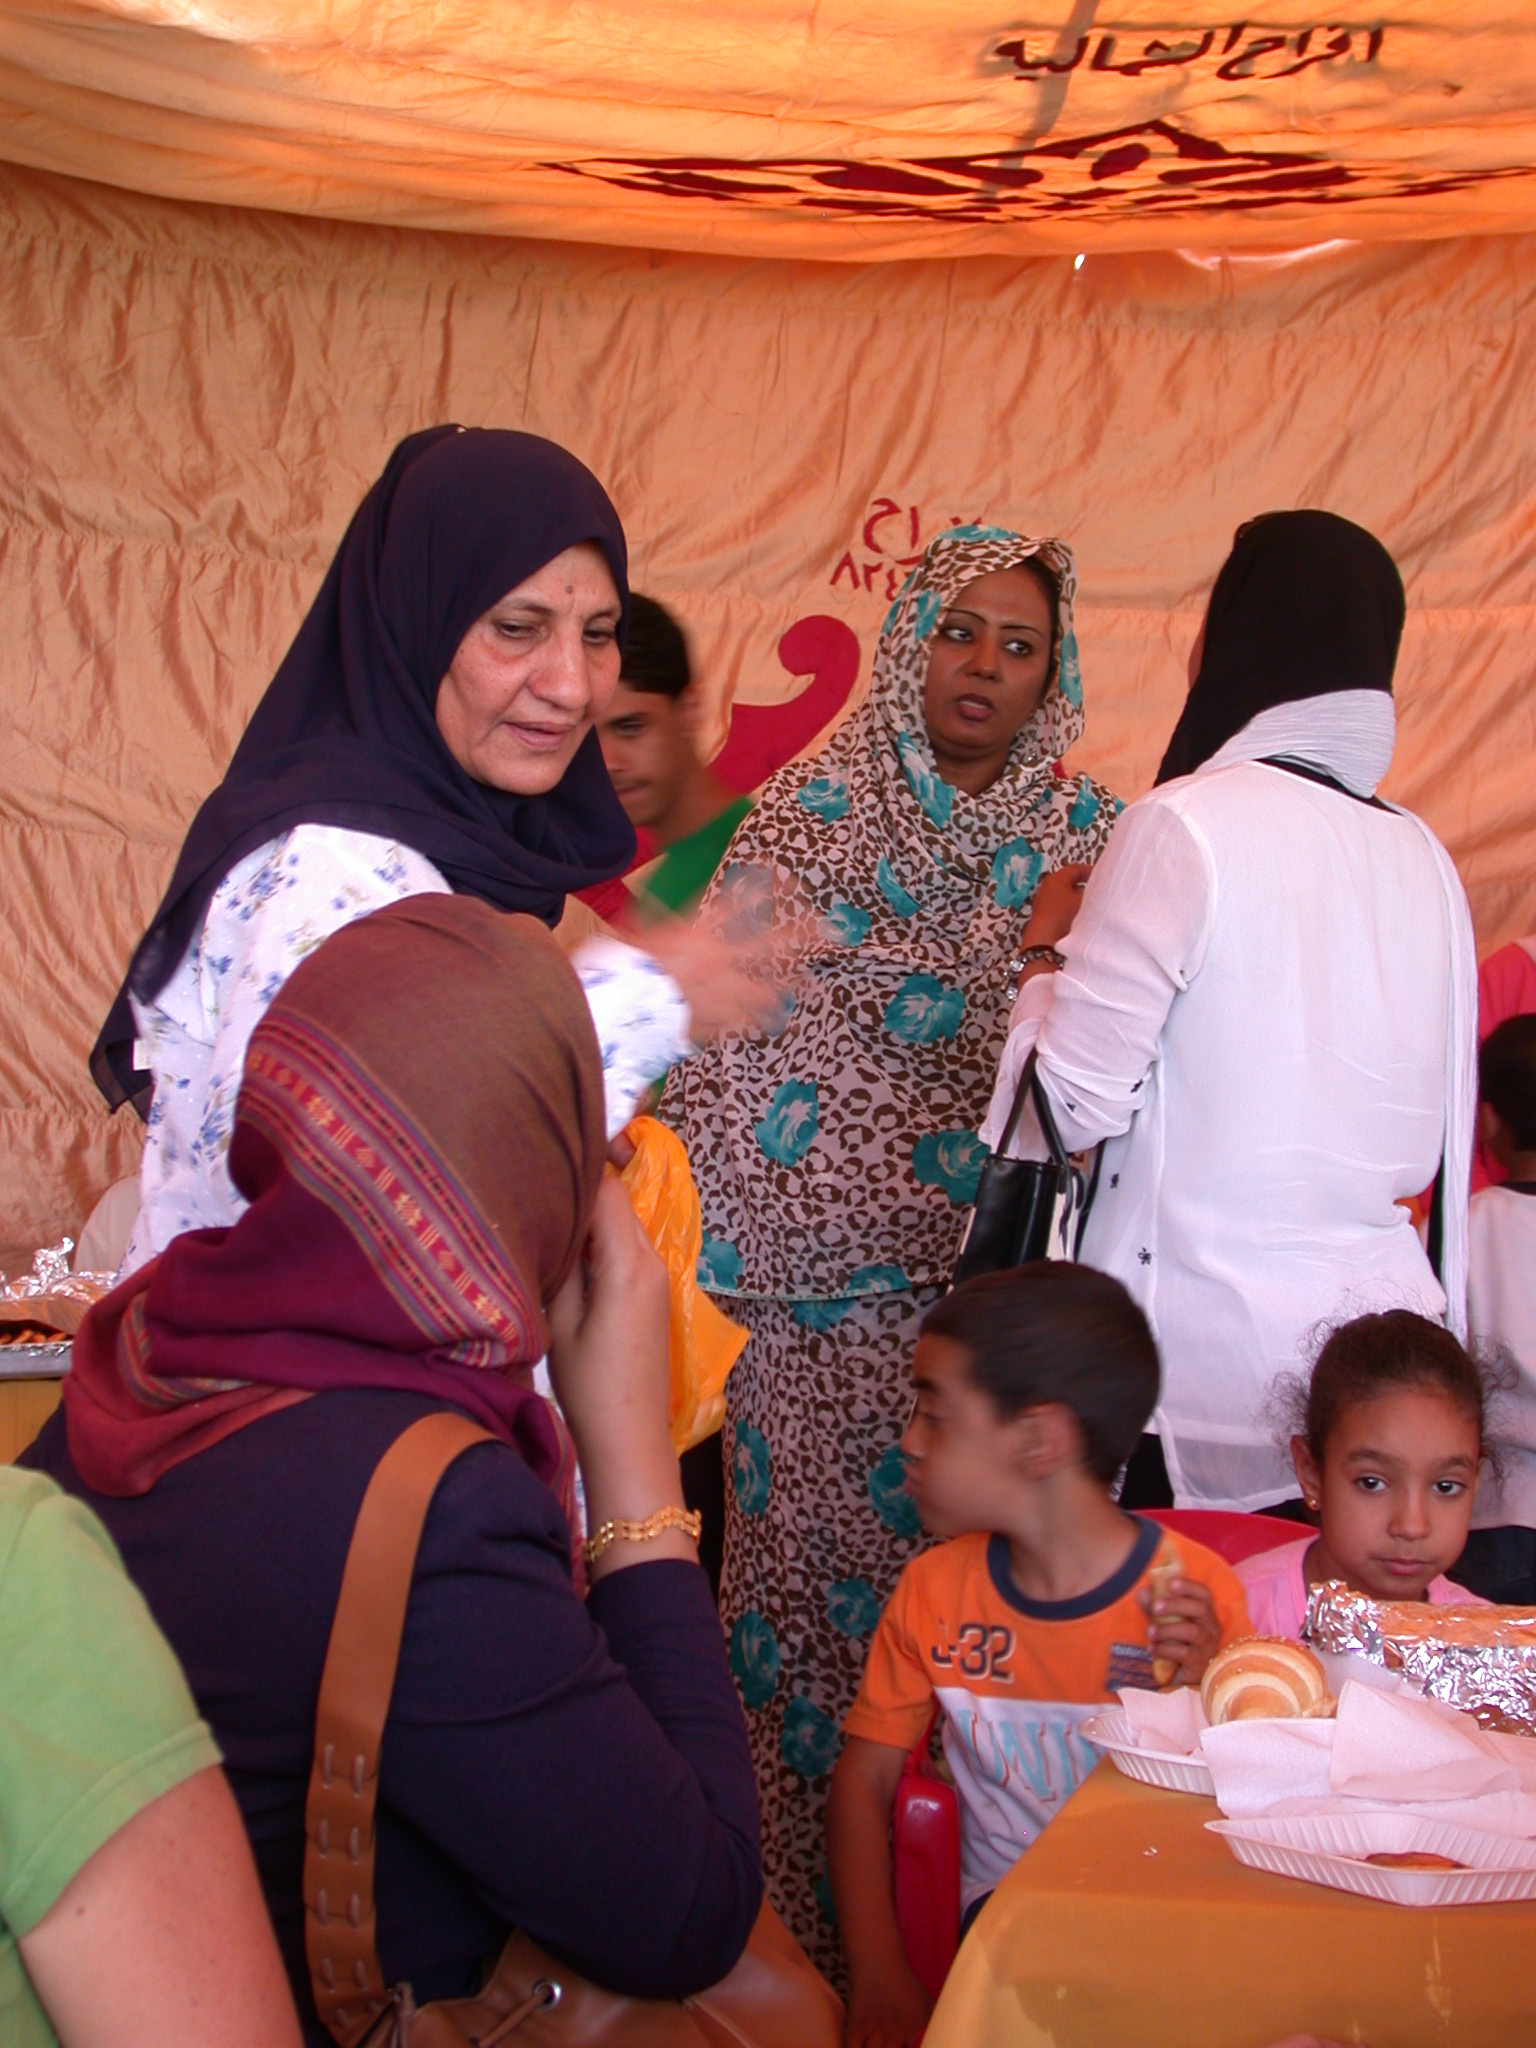 Women at International Charity Fair, Khartoum, Sudan